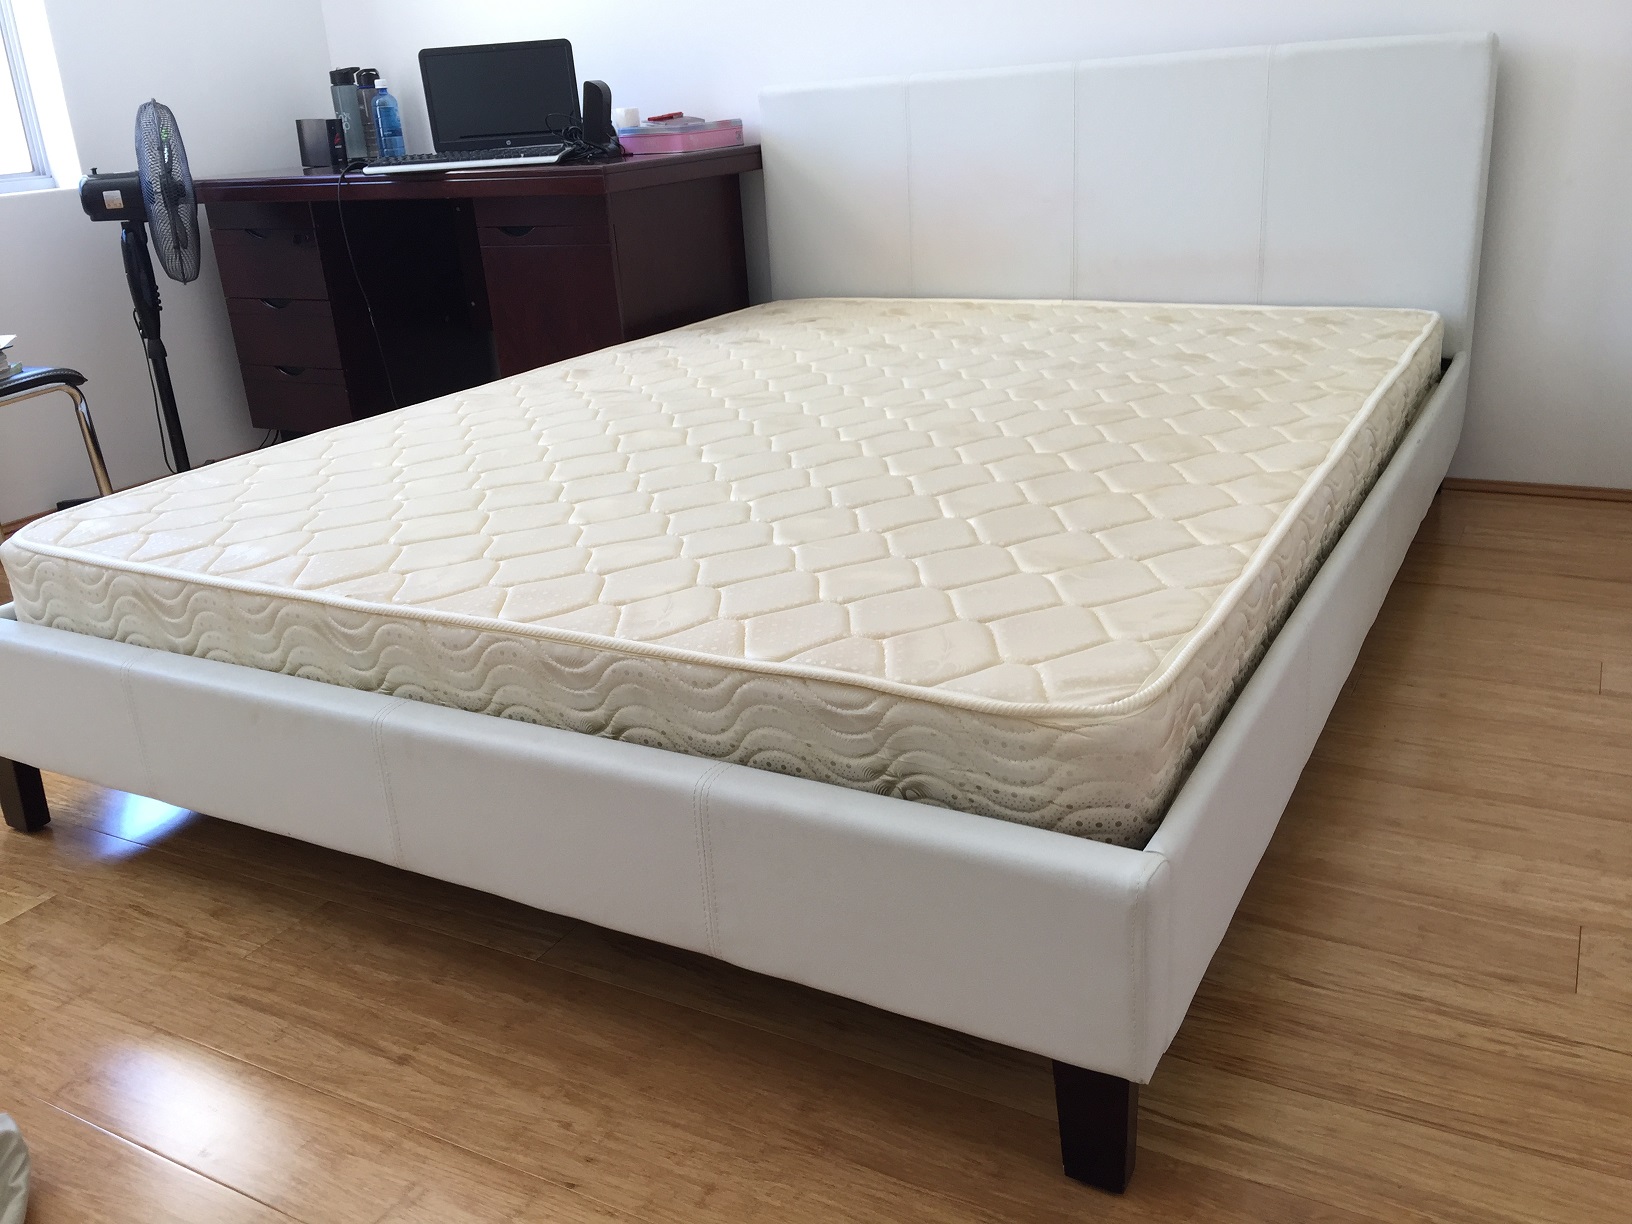 9Queen size bed $150